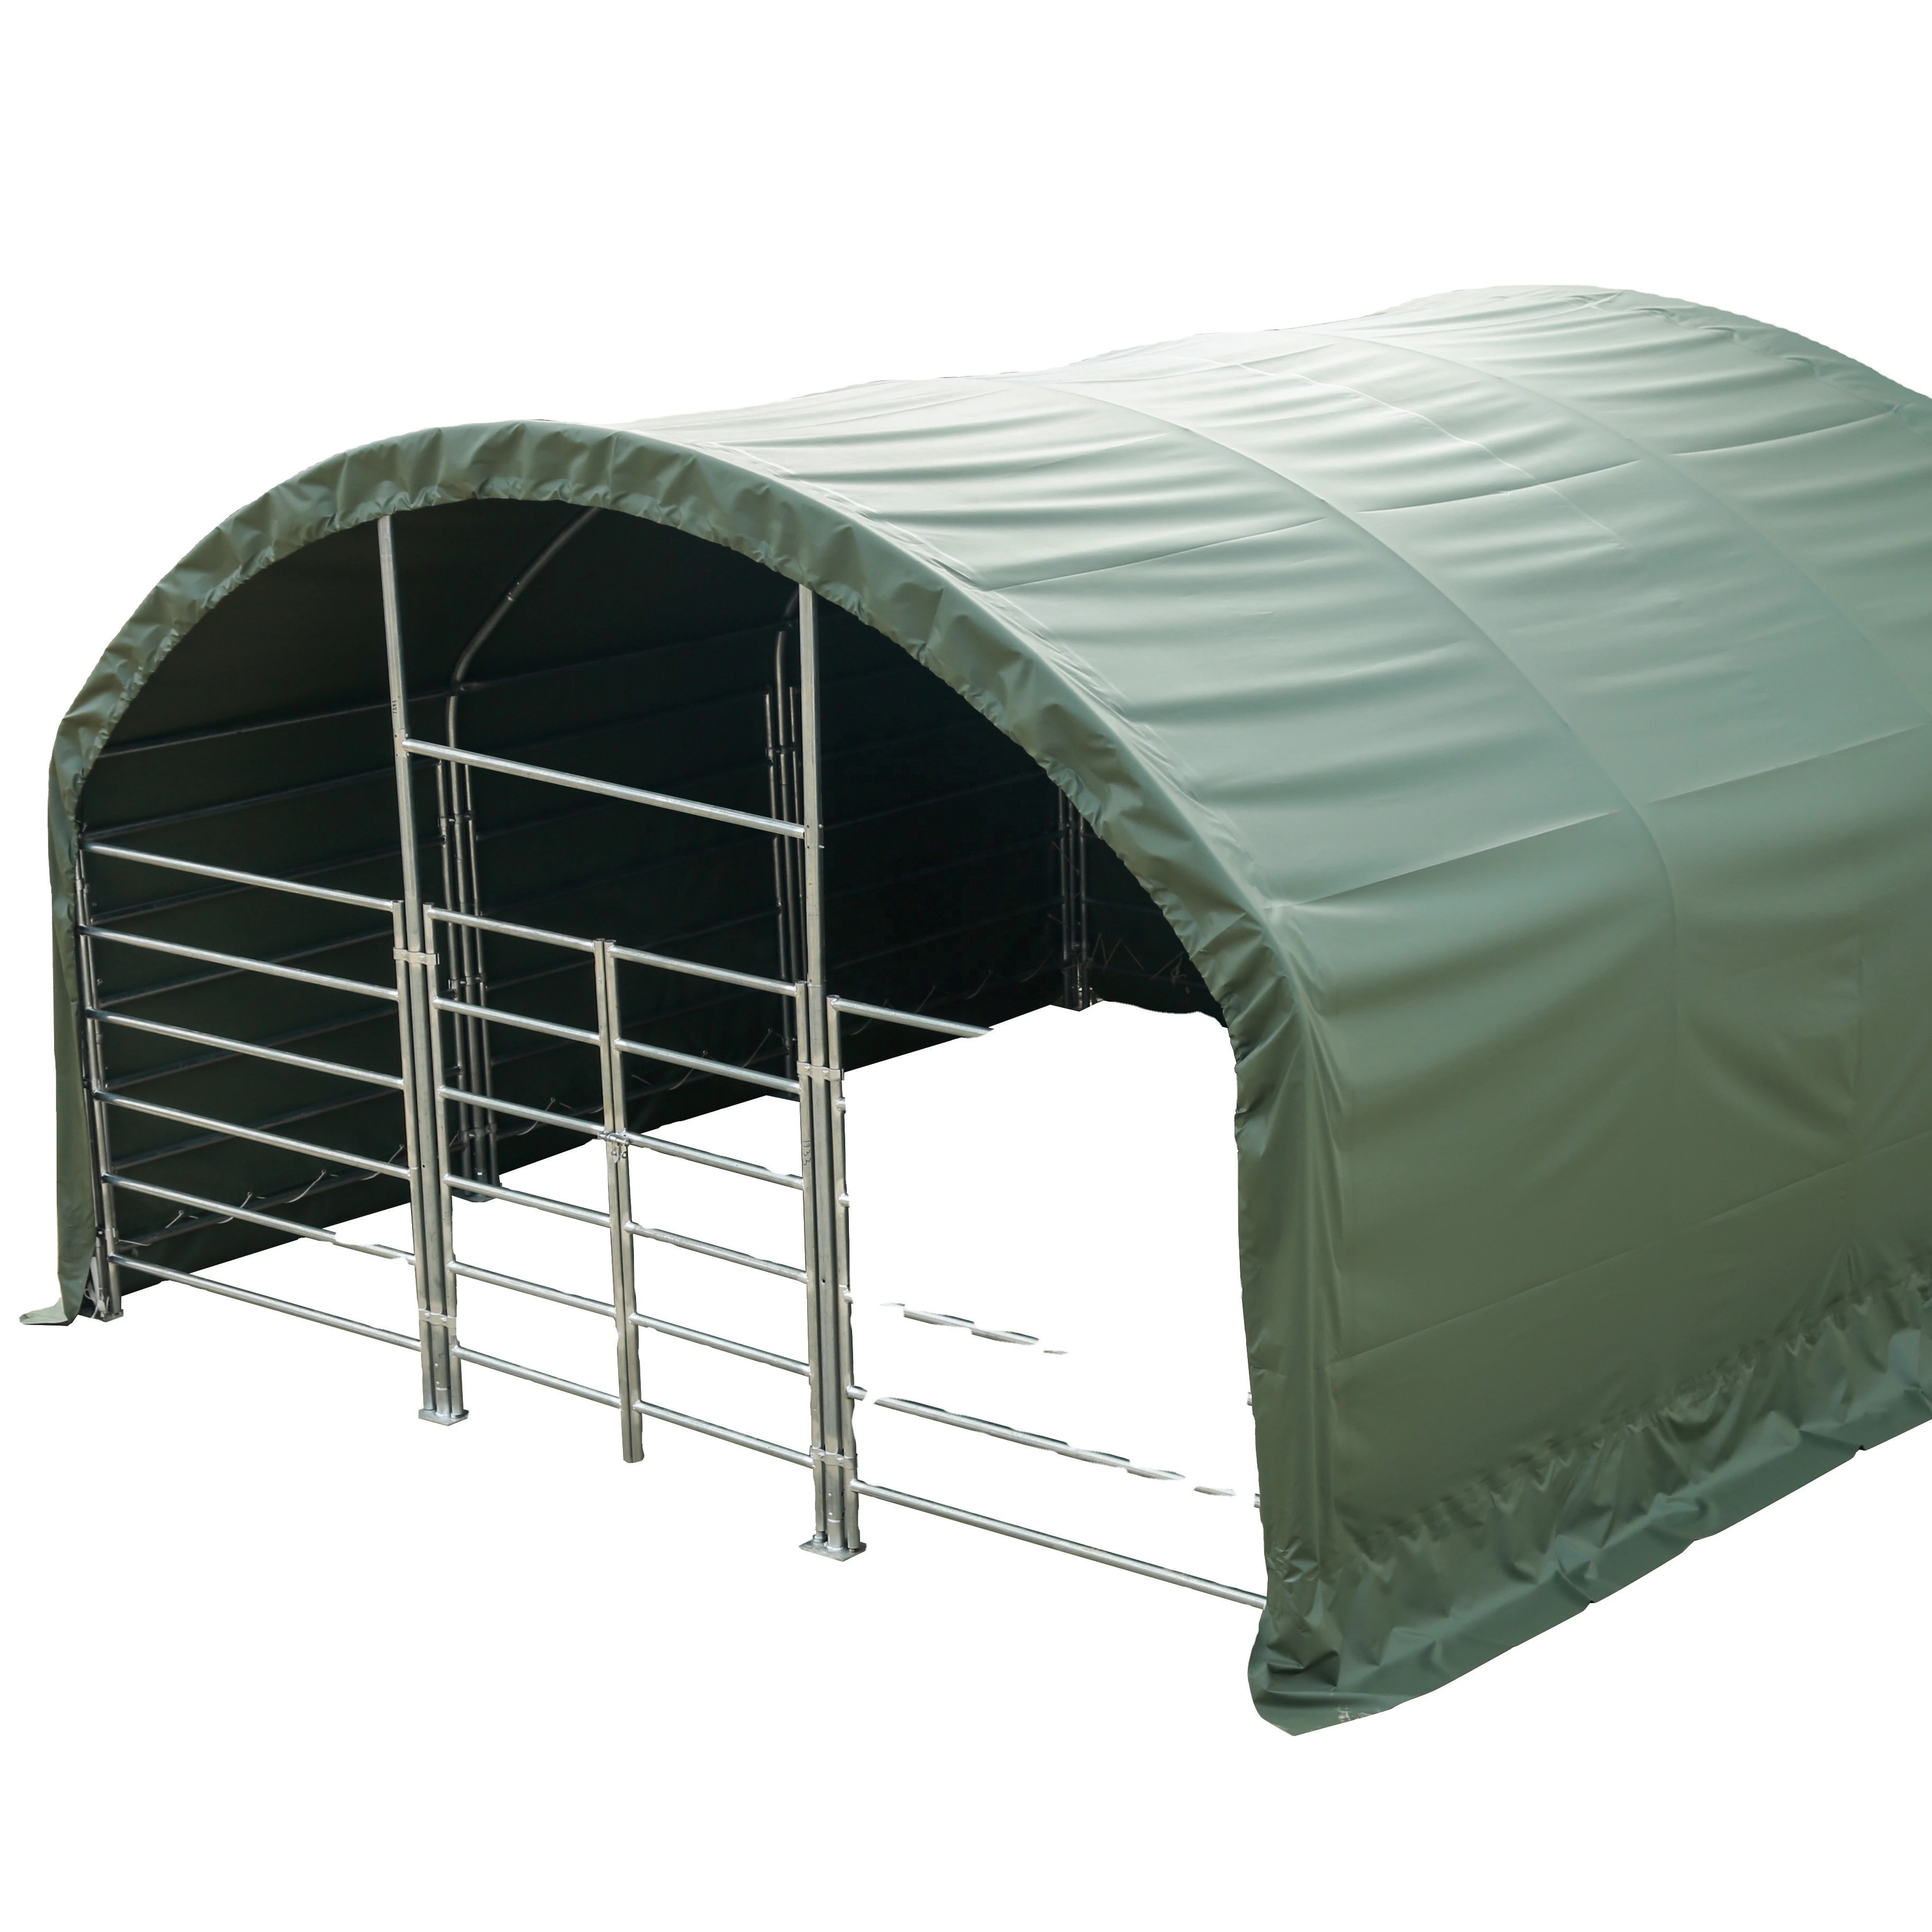 6m PVC Tarp Livestock Tent For Animal, Tent For Cattles, Horses